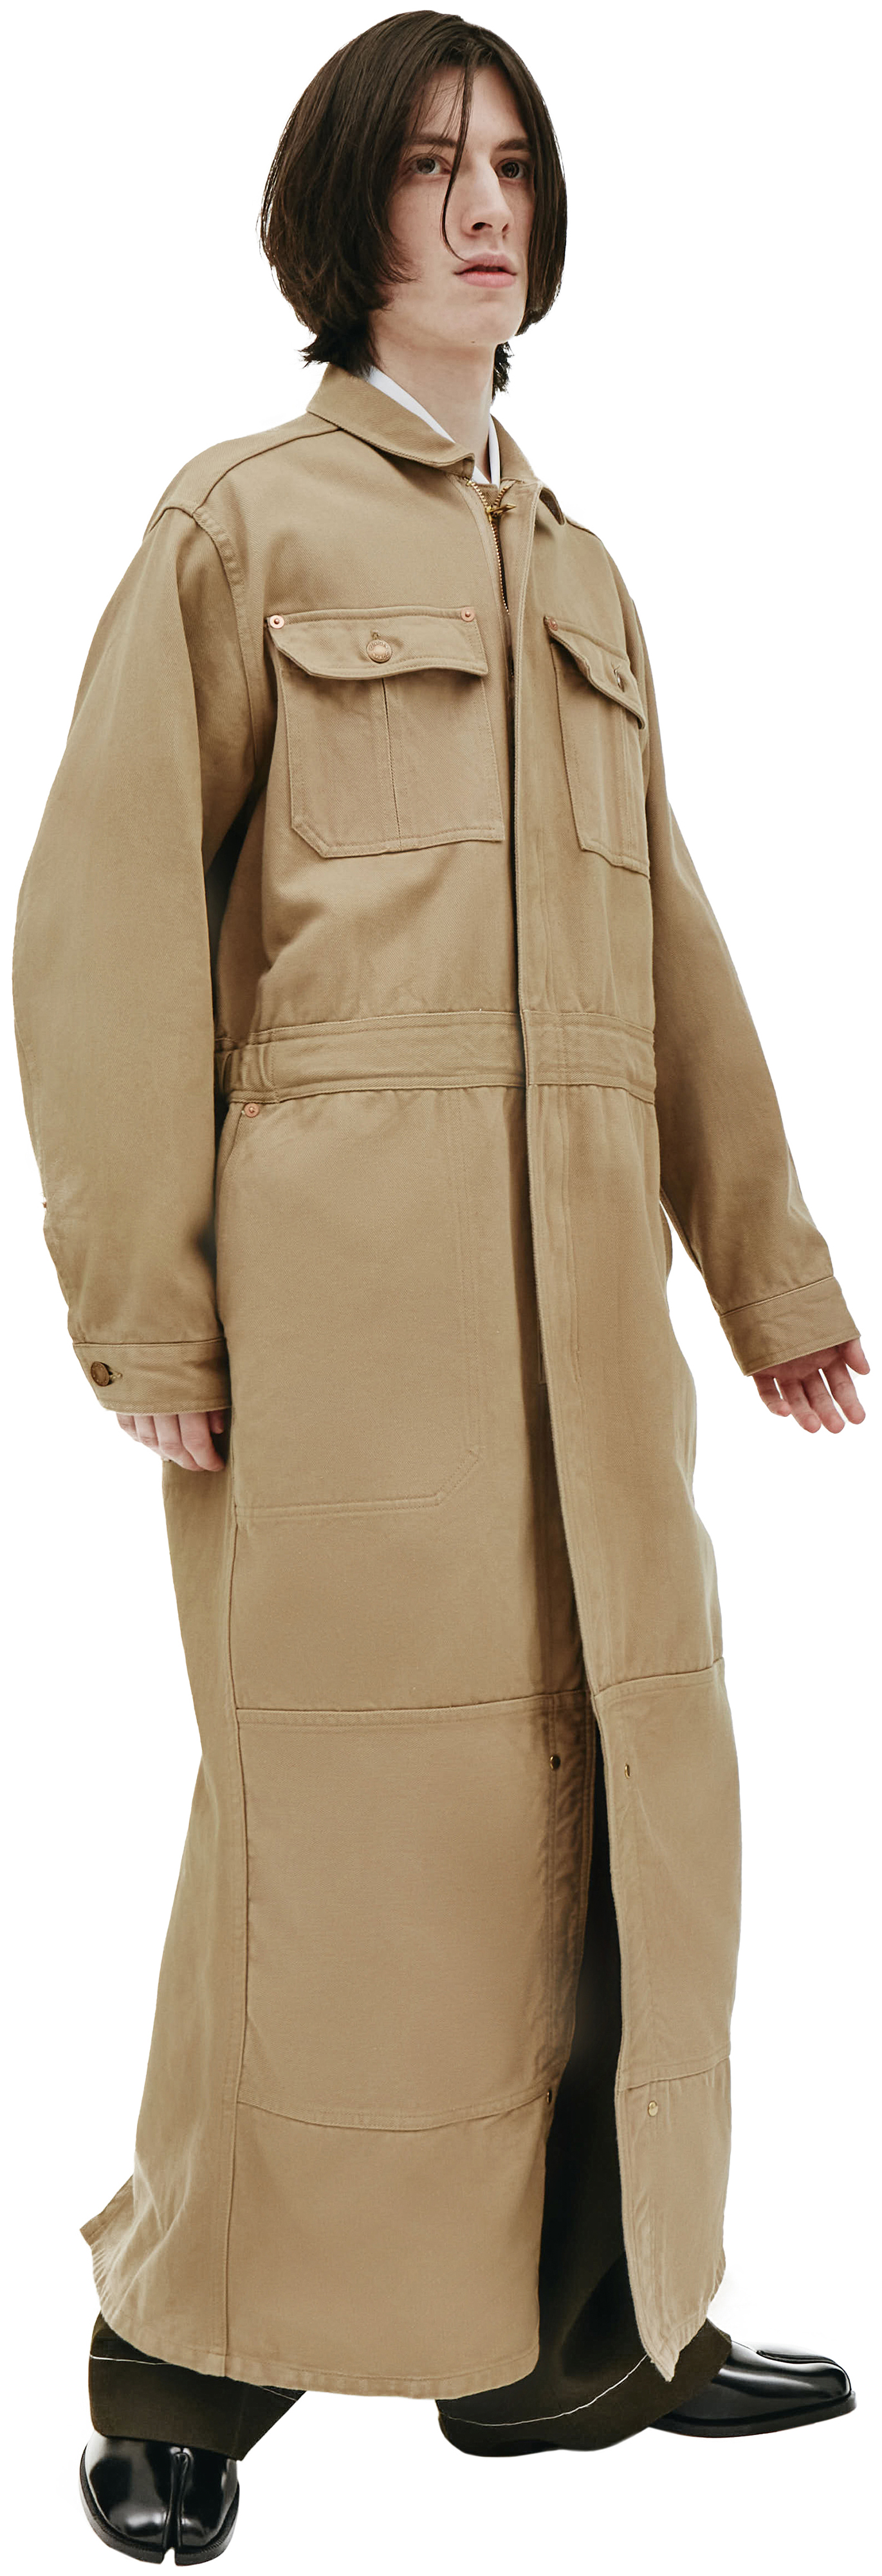 Buy Doublet men brown silk & cotton jumpsuit coat for €672 online